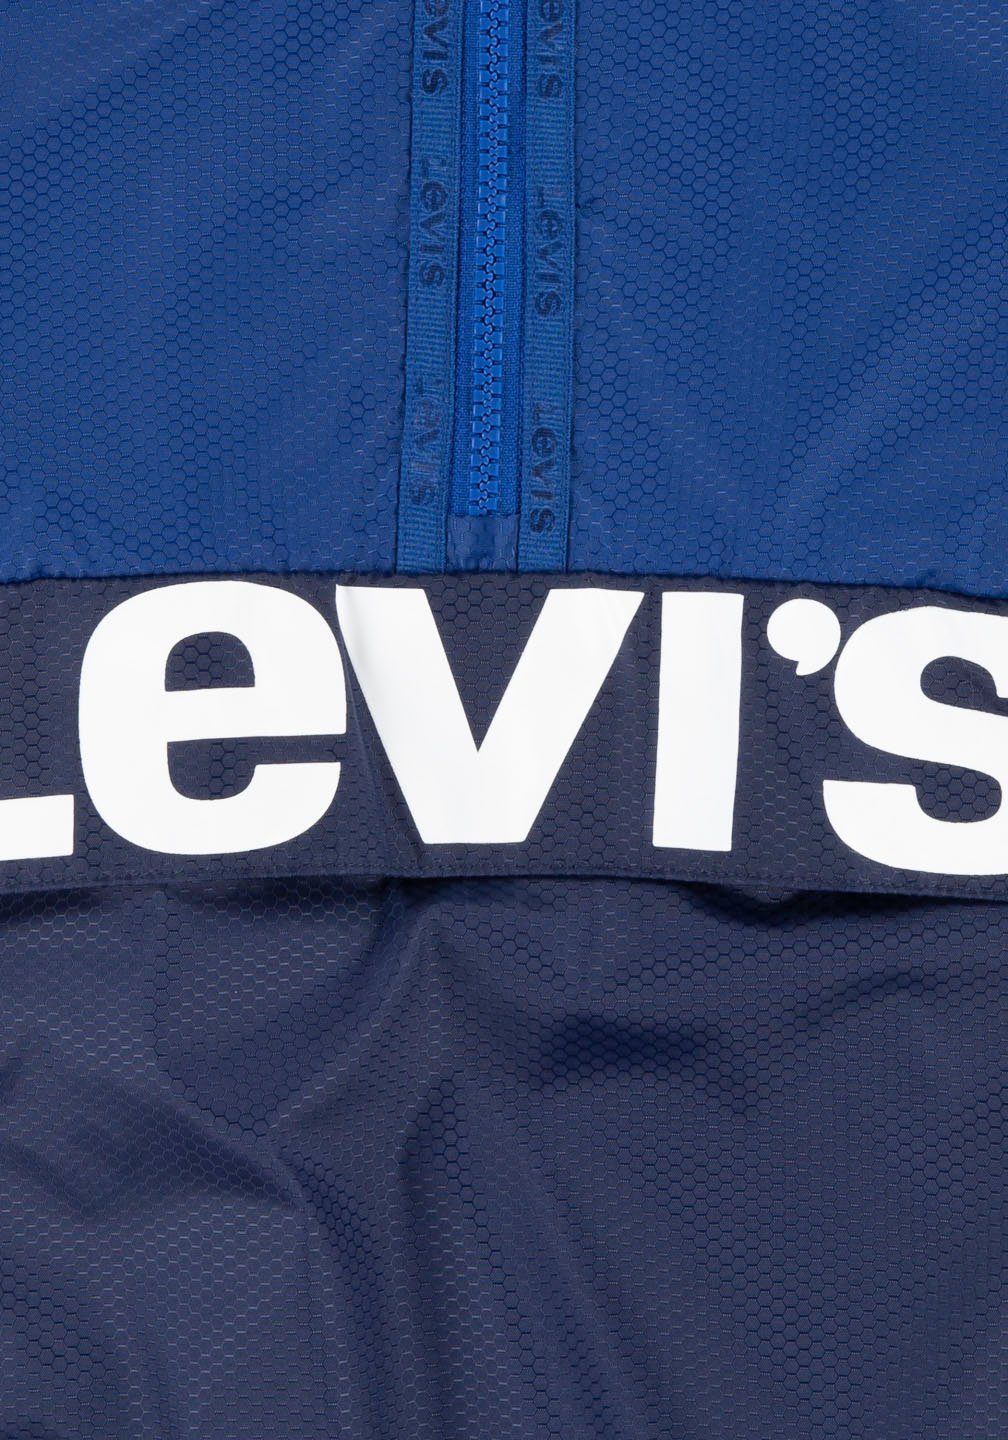 Levi's Kidswear Anorak for boys